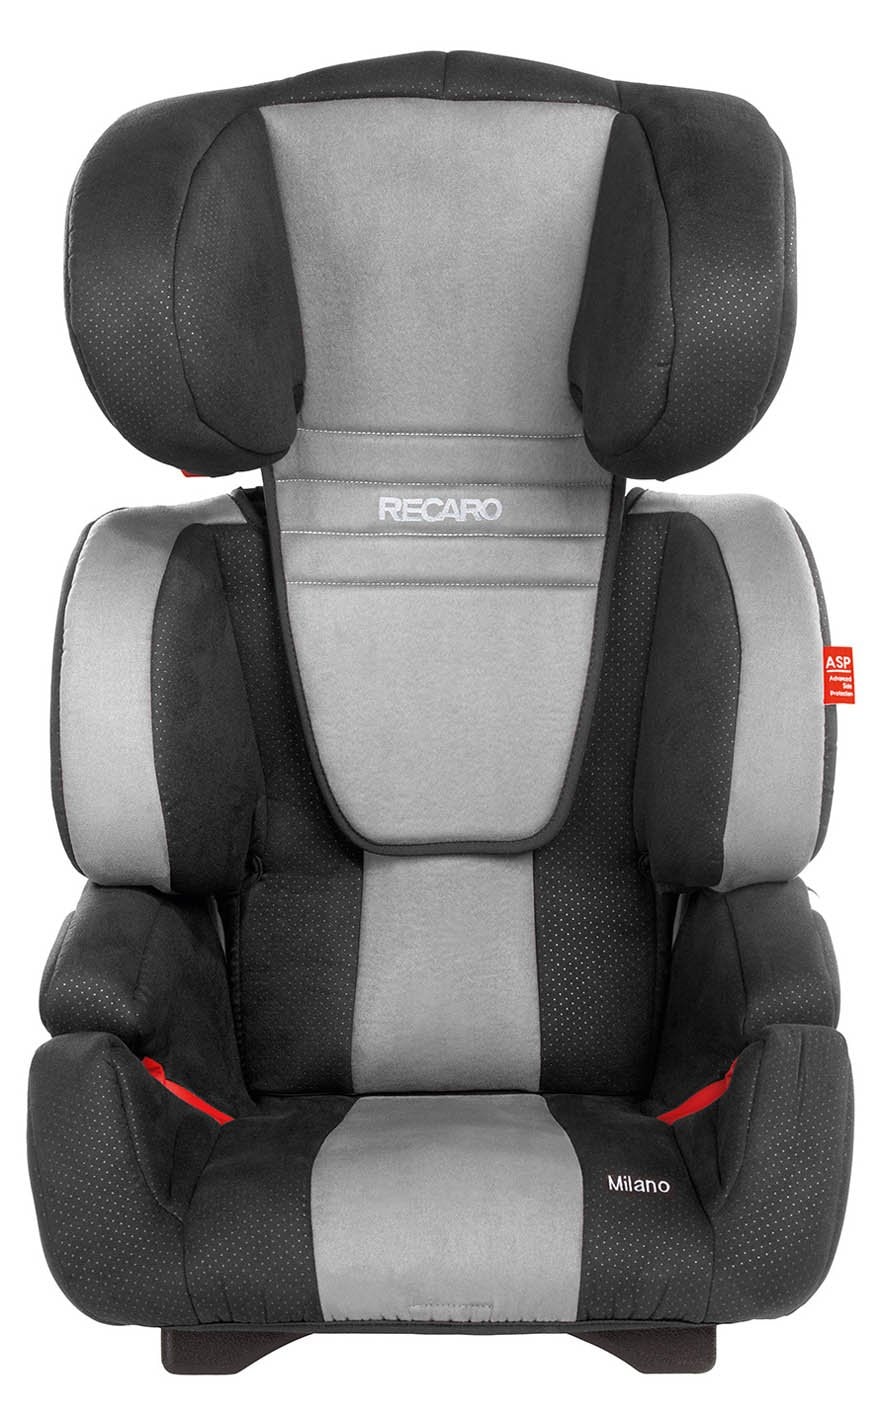 Ce siège-auto Isofix Cybex conviendra pour des enfants de 9 à 36 kg (et il  est à prix fou chez ) 